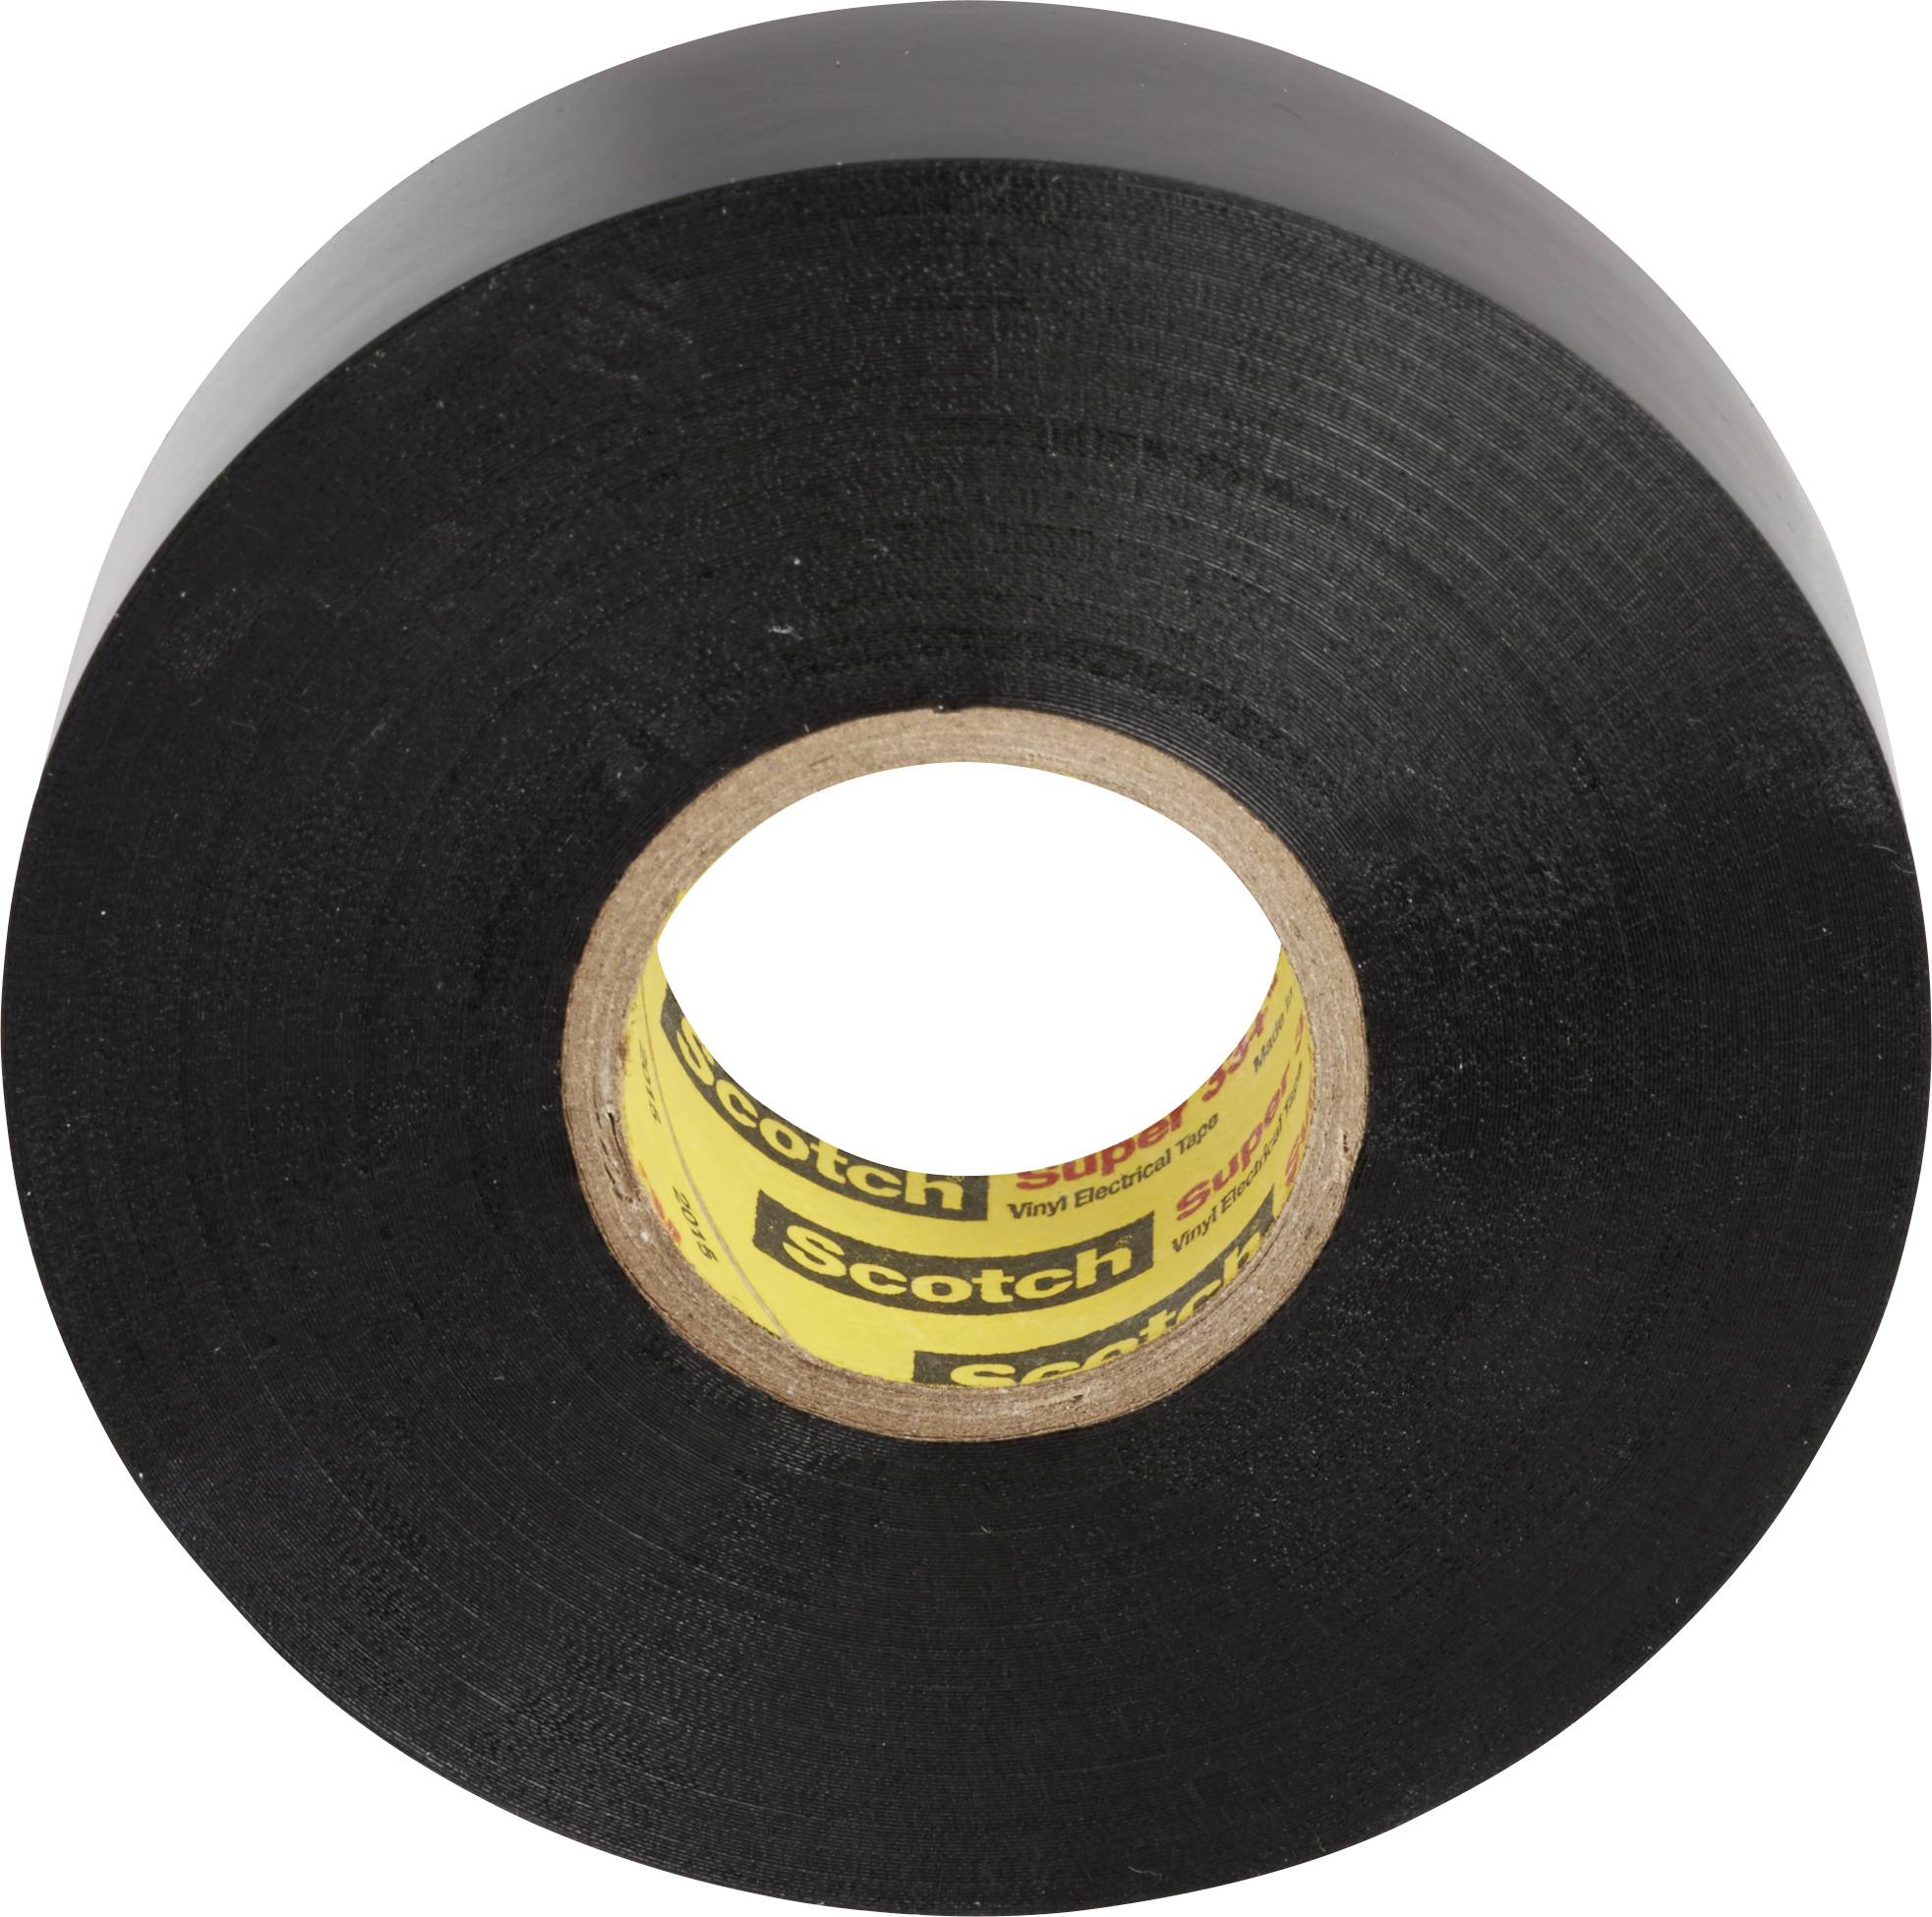 Ruban isolant en vinyle Scotch®, 66R, noir, 0,25 mm (10 mil), 50 mm x 33 m  (2 po x 108 pi)